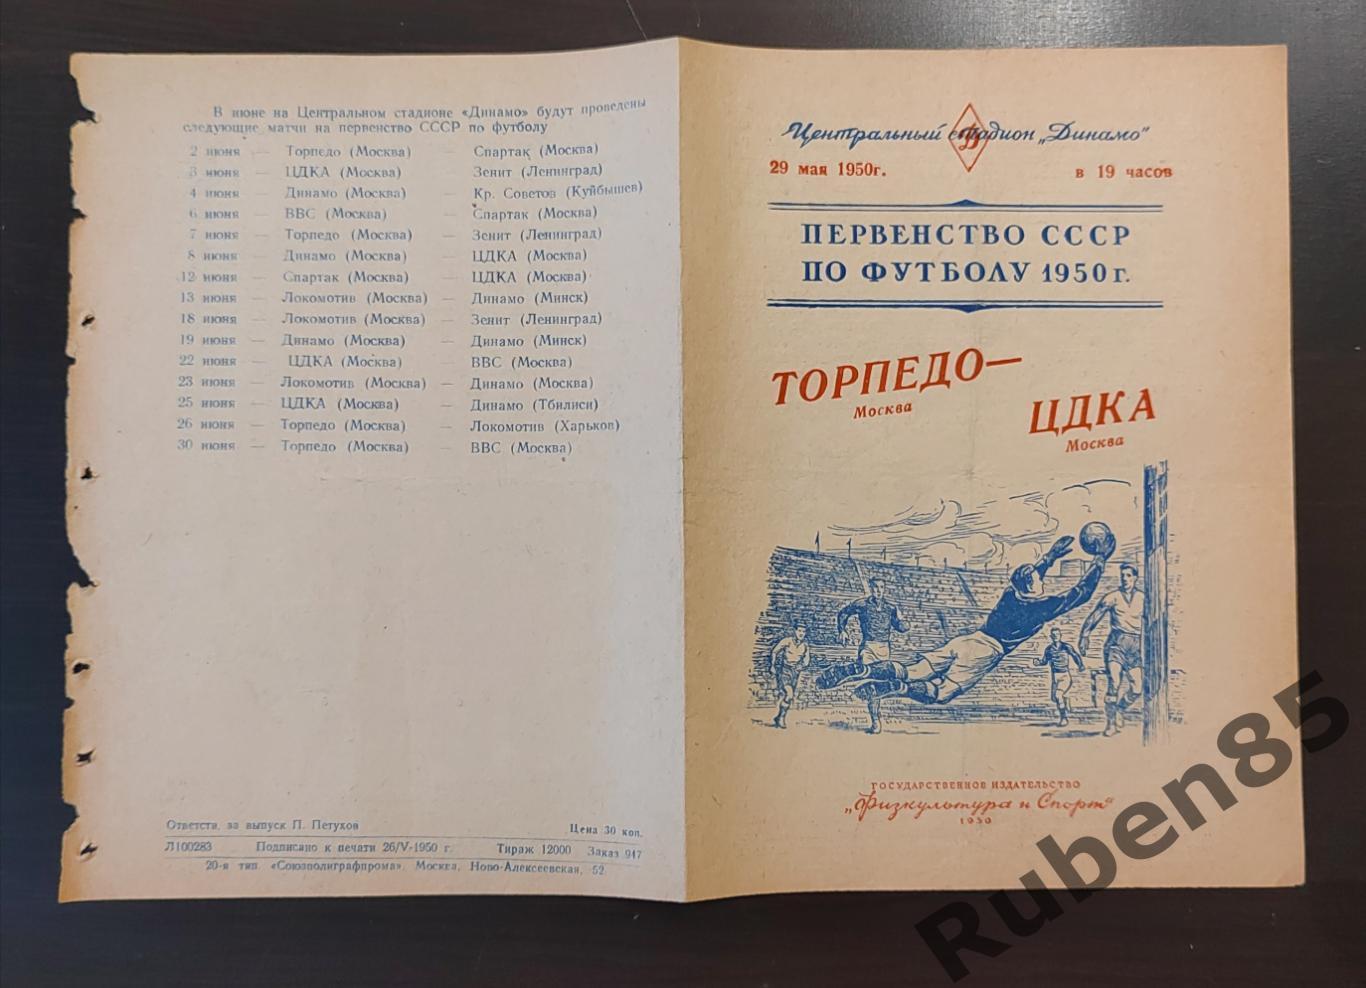 Футбол. Программа Торпедо Москва - ЦДКА 29.05 1950 ЦСКА